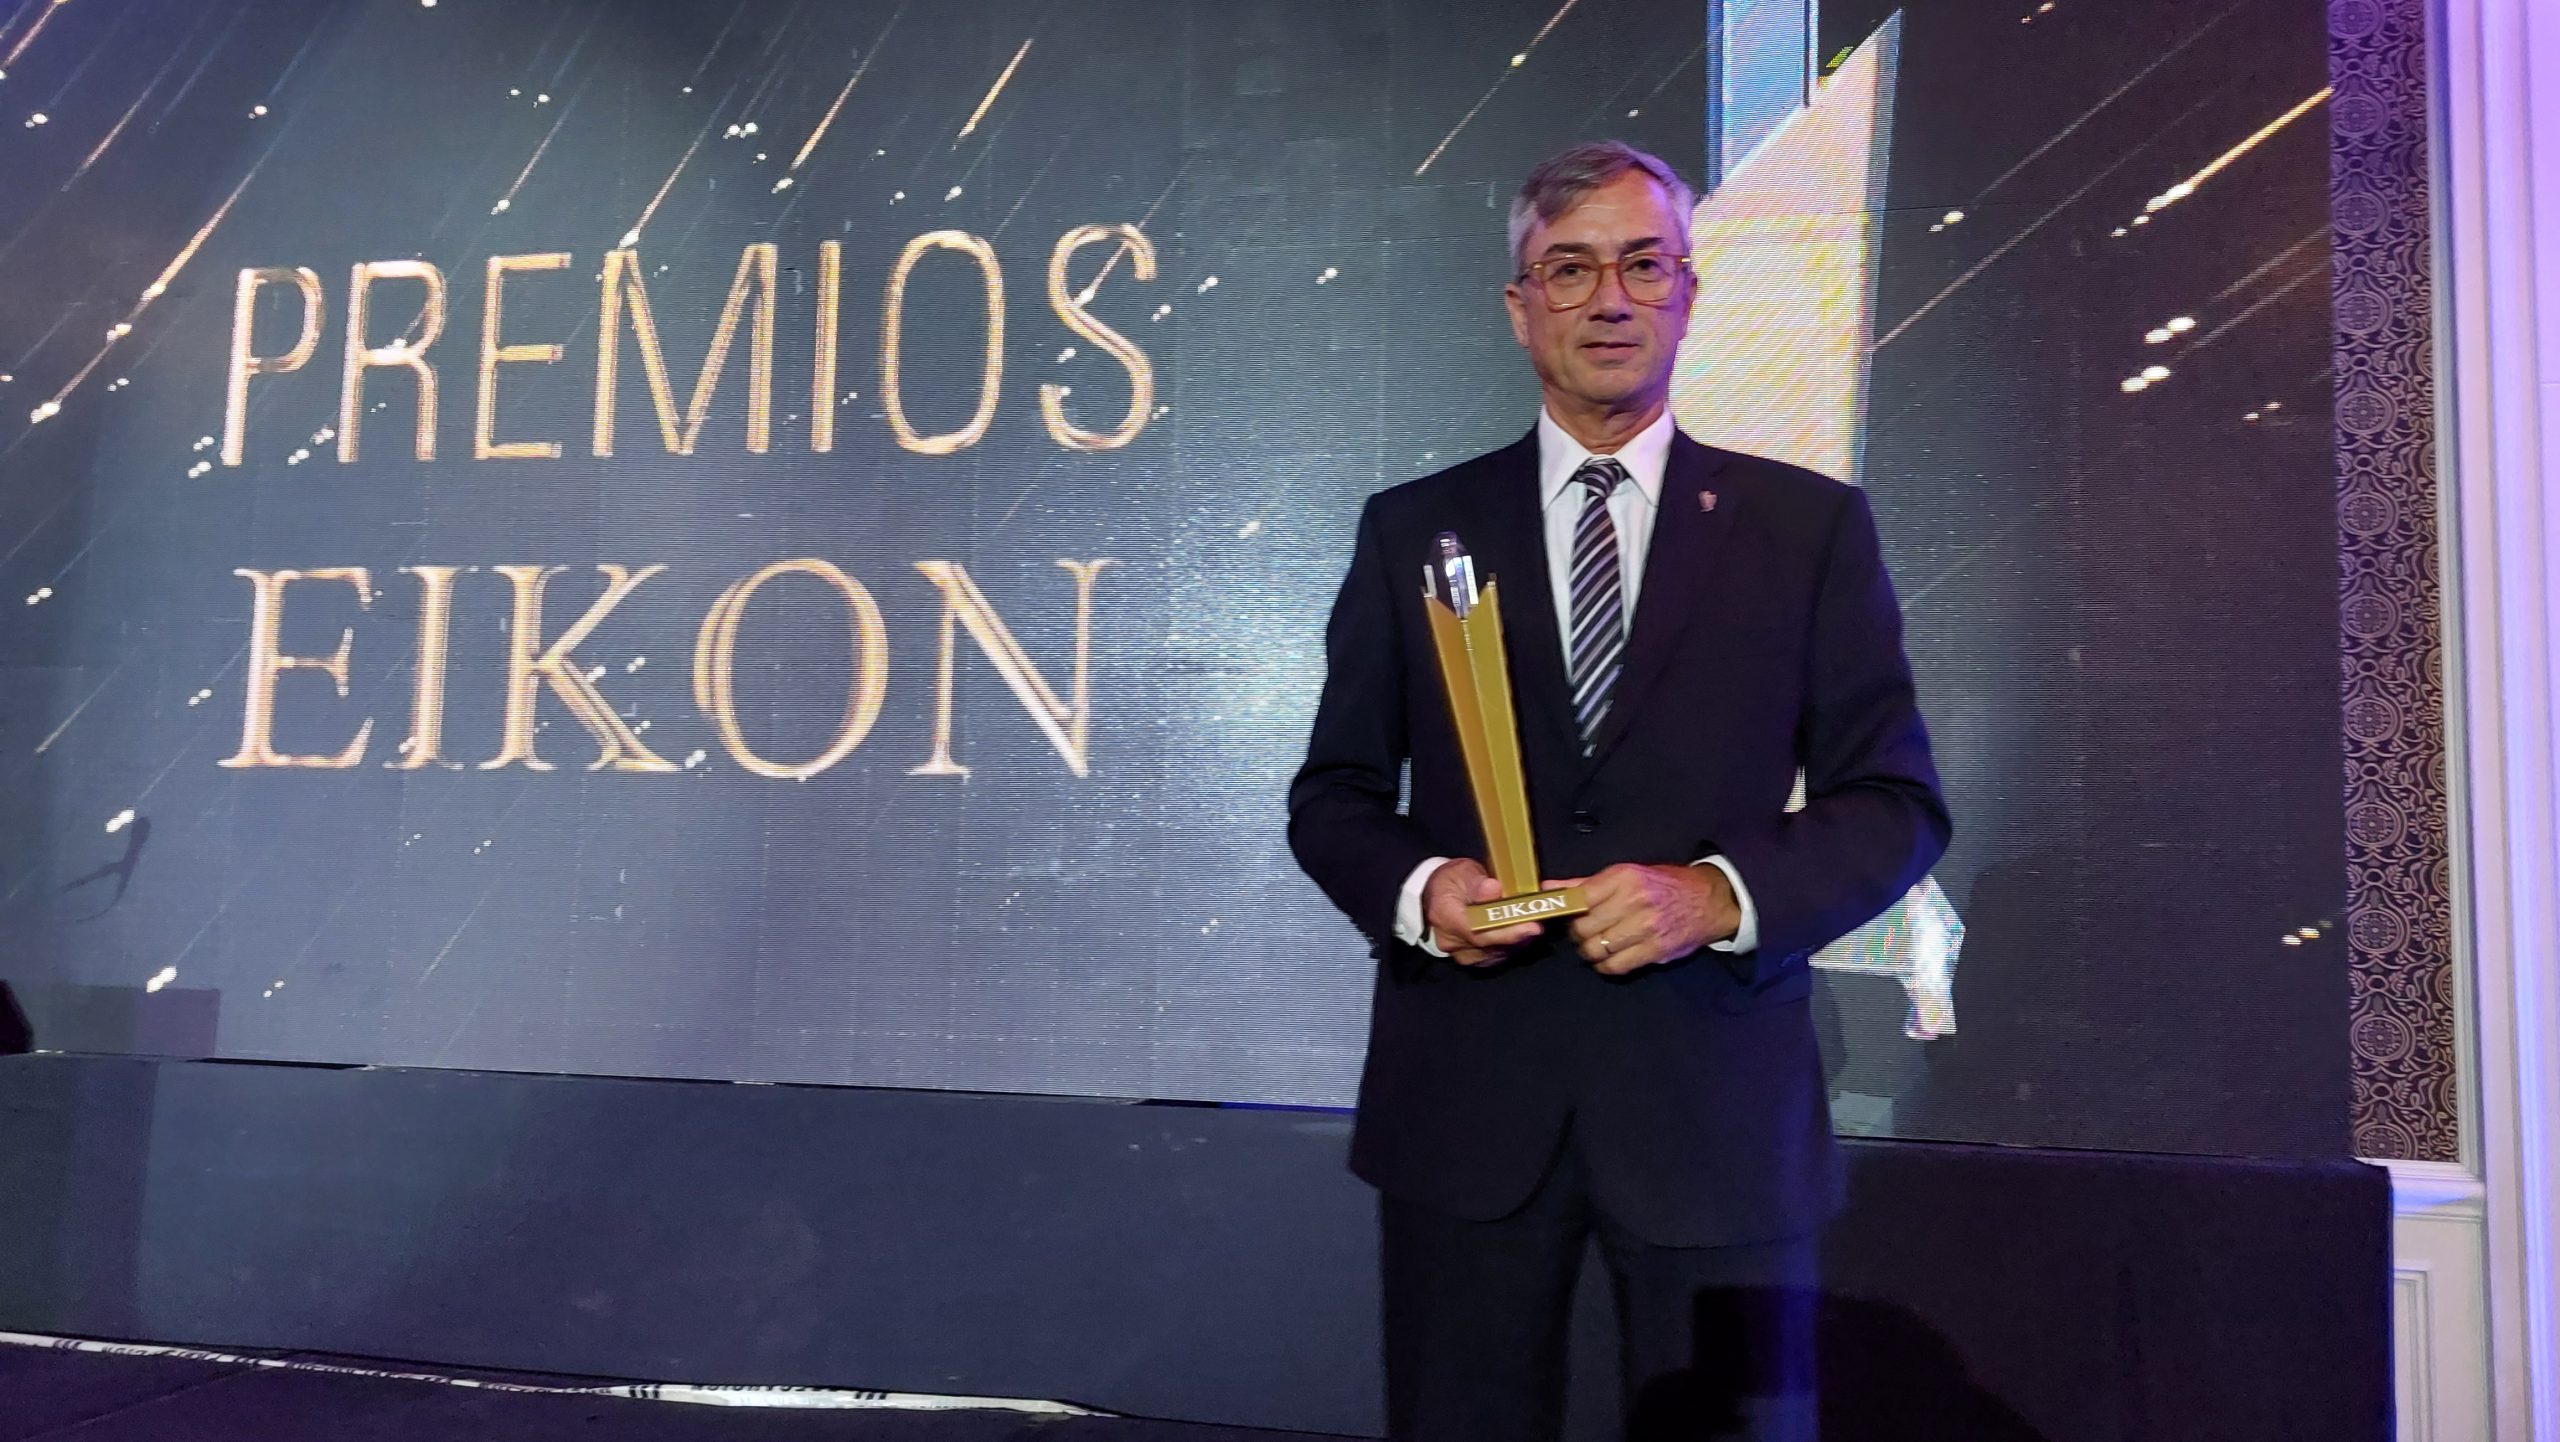 Premios Eikon distingue la excelente gestión de comunicación institucional de la campaña de Marketing de Metso en Sudamérica en la categoría Sustentabilidad Ambiental